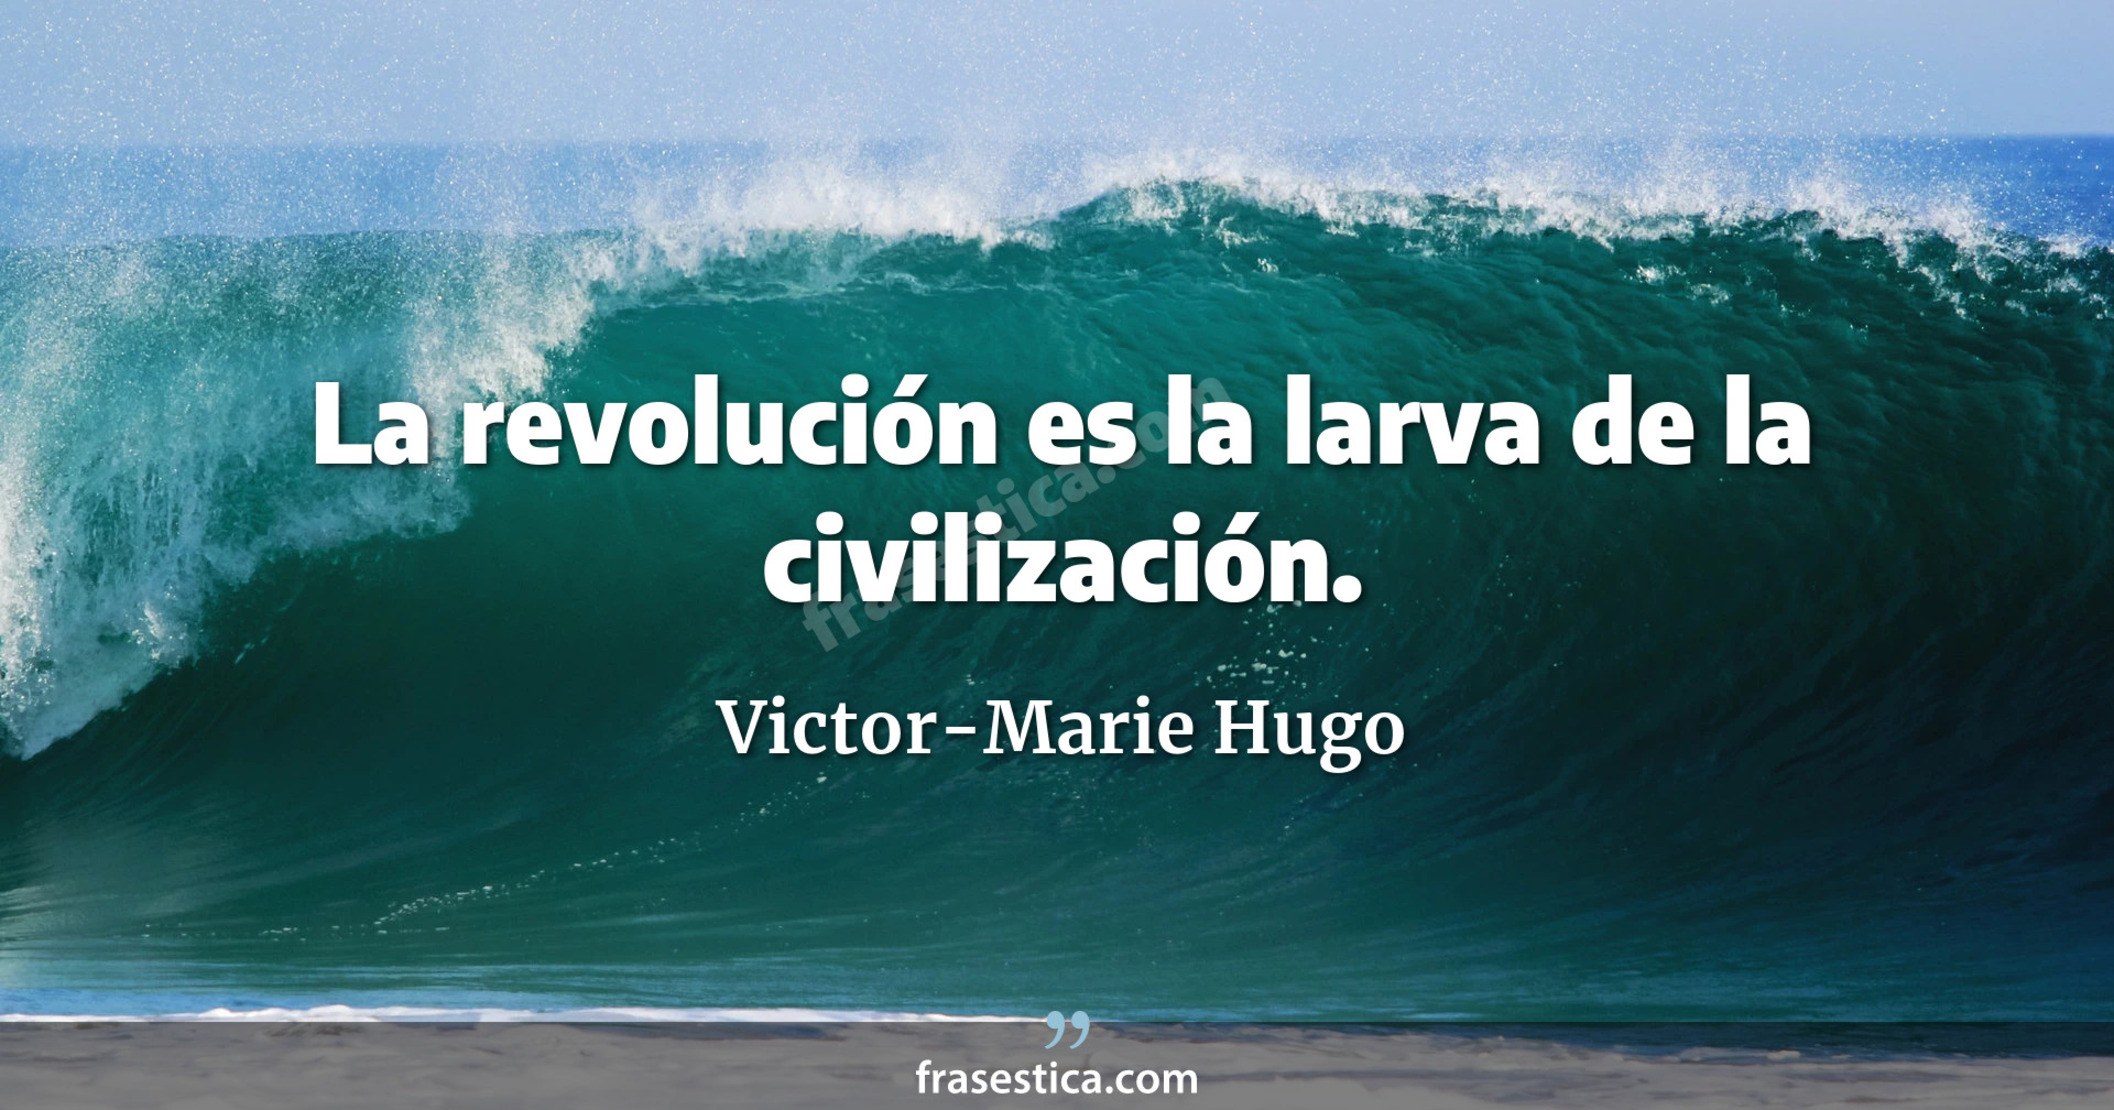 La revolución es la larva de la civilización. - Victor-Marie Hugo